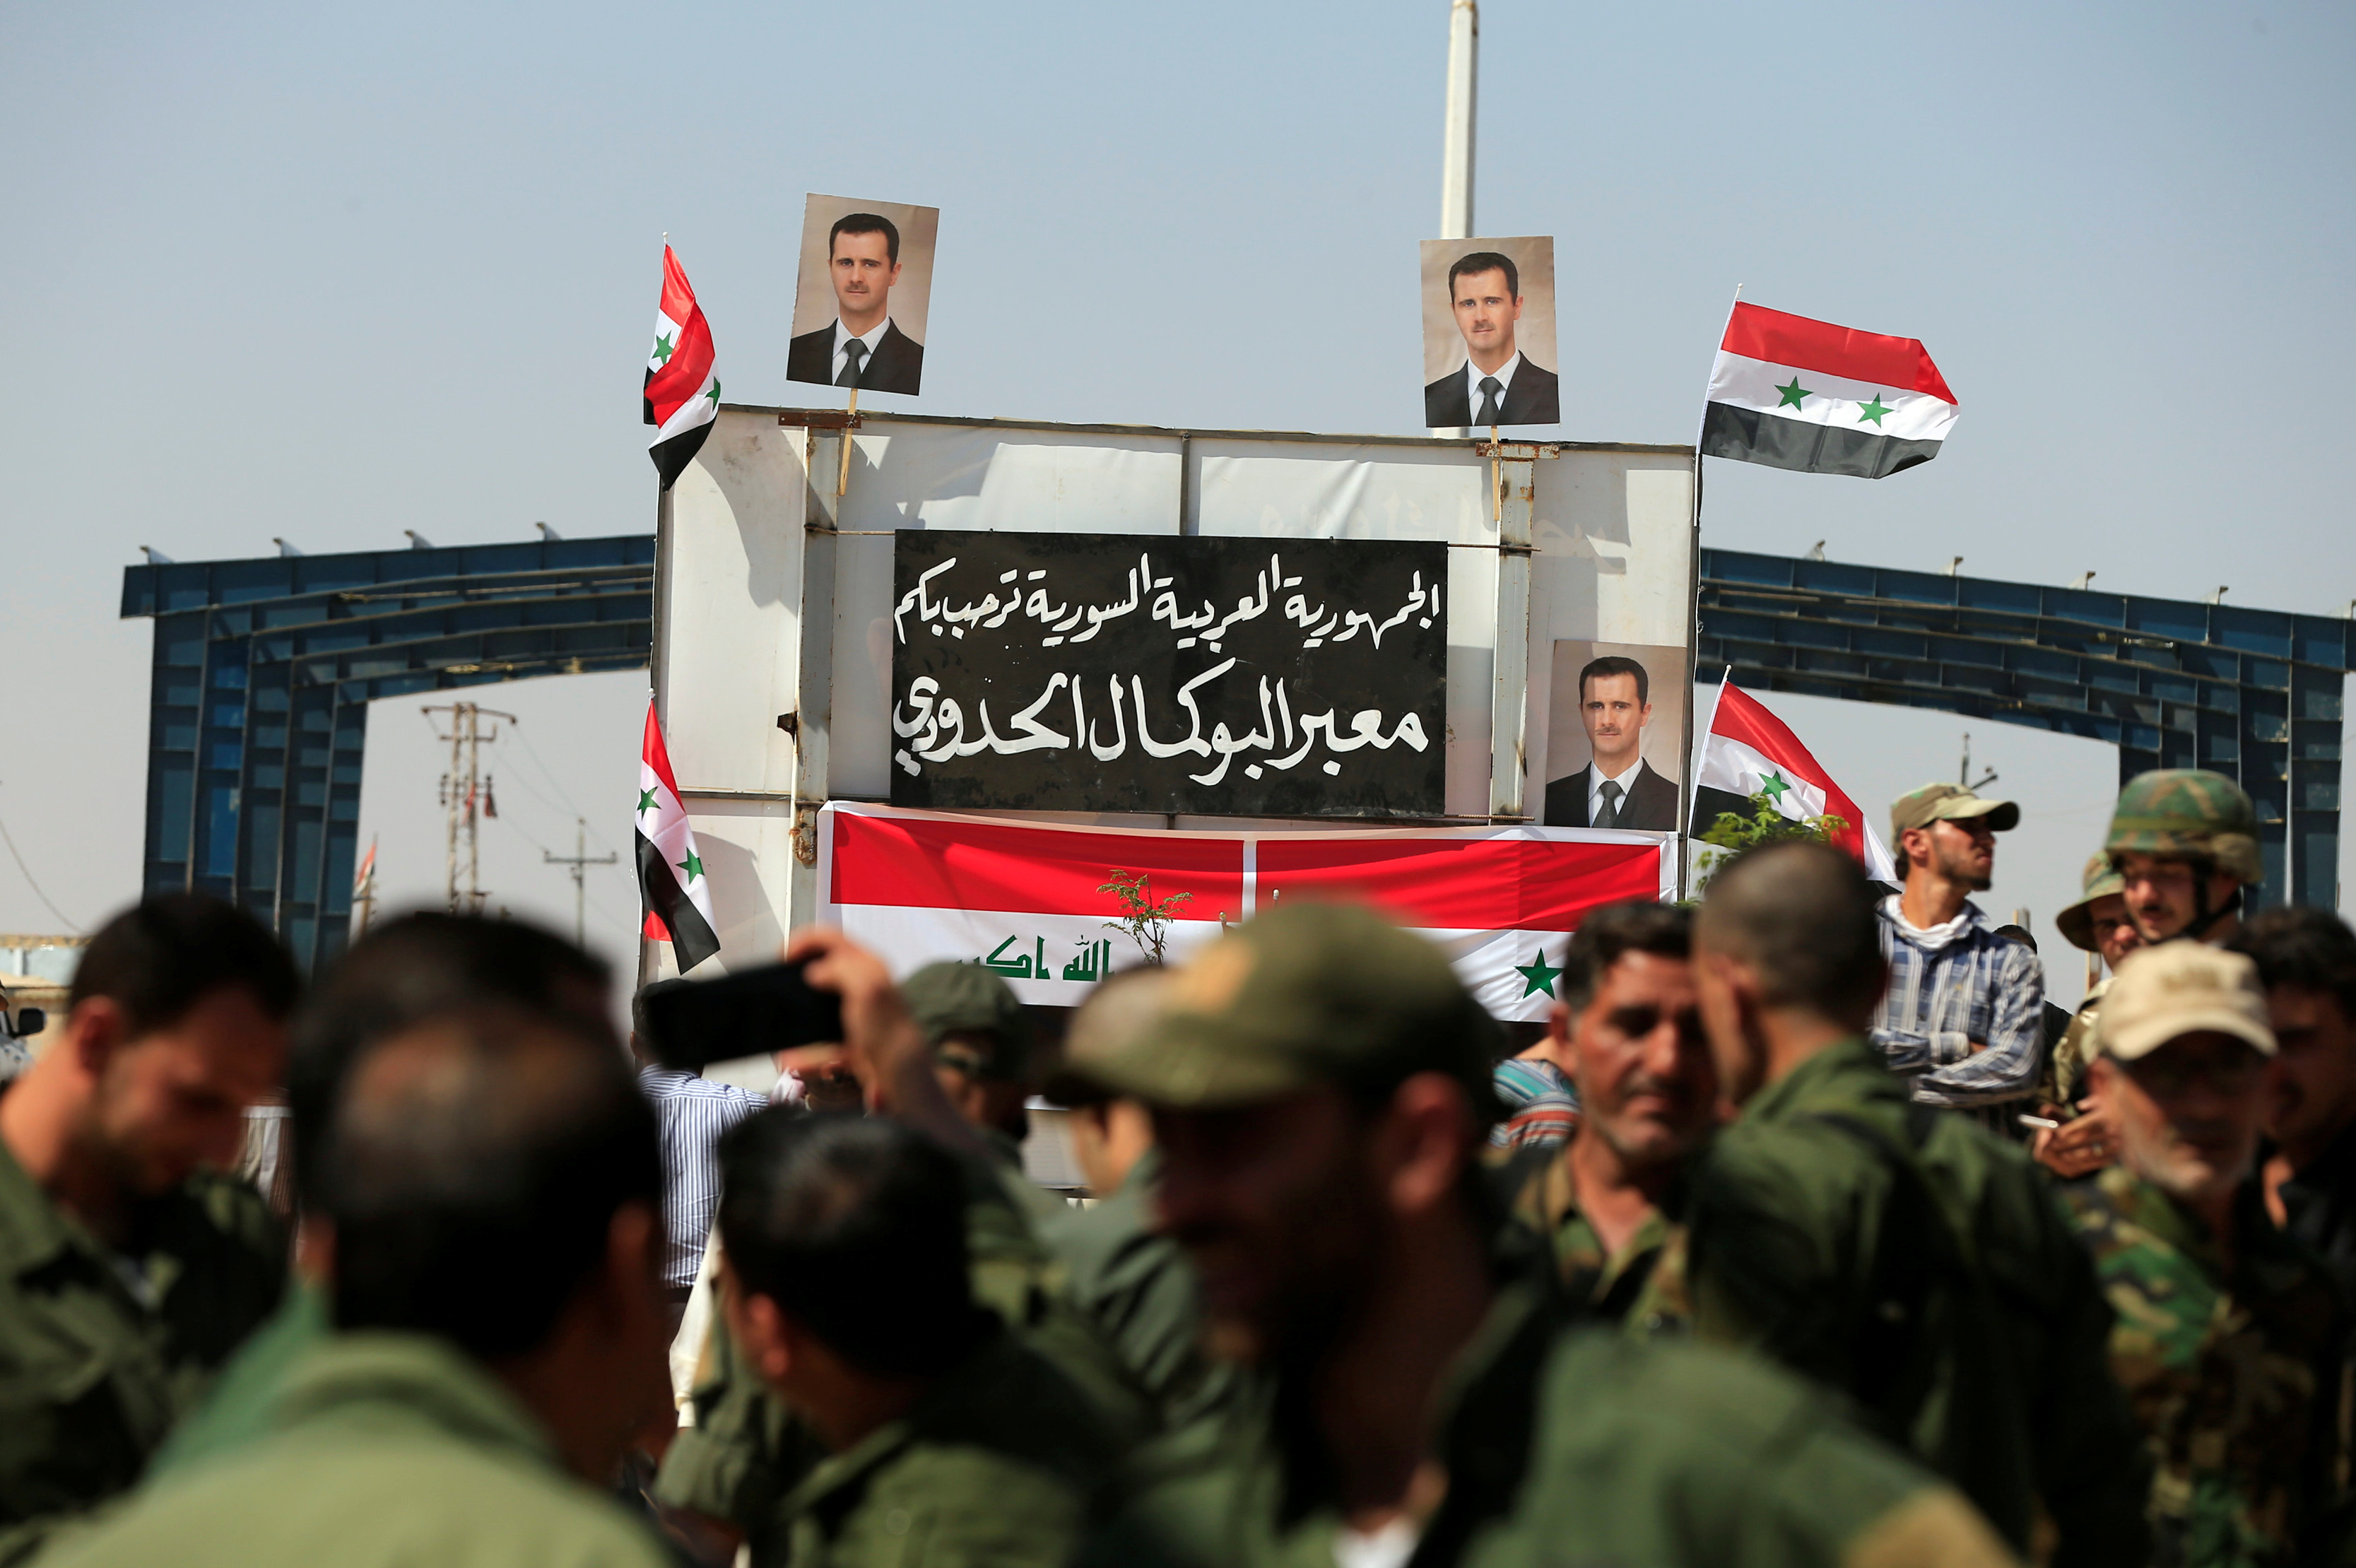 قوات الأمن السورية عند المعبر الحدودي العراقي السوري ، بعد أن أعيد فتحه للتجارة والسفر